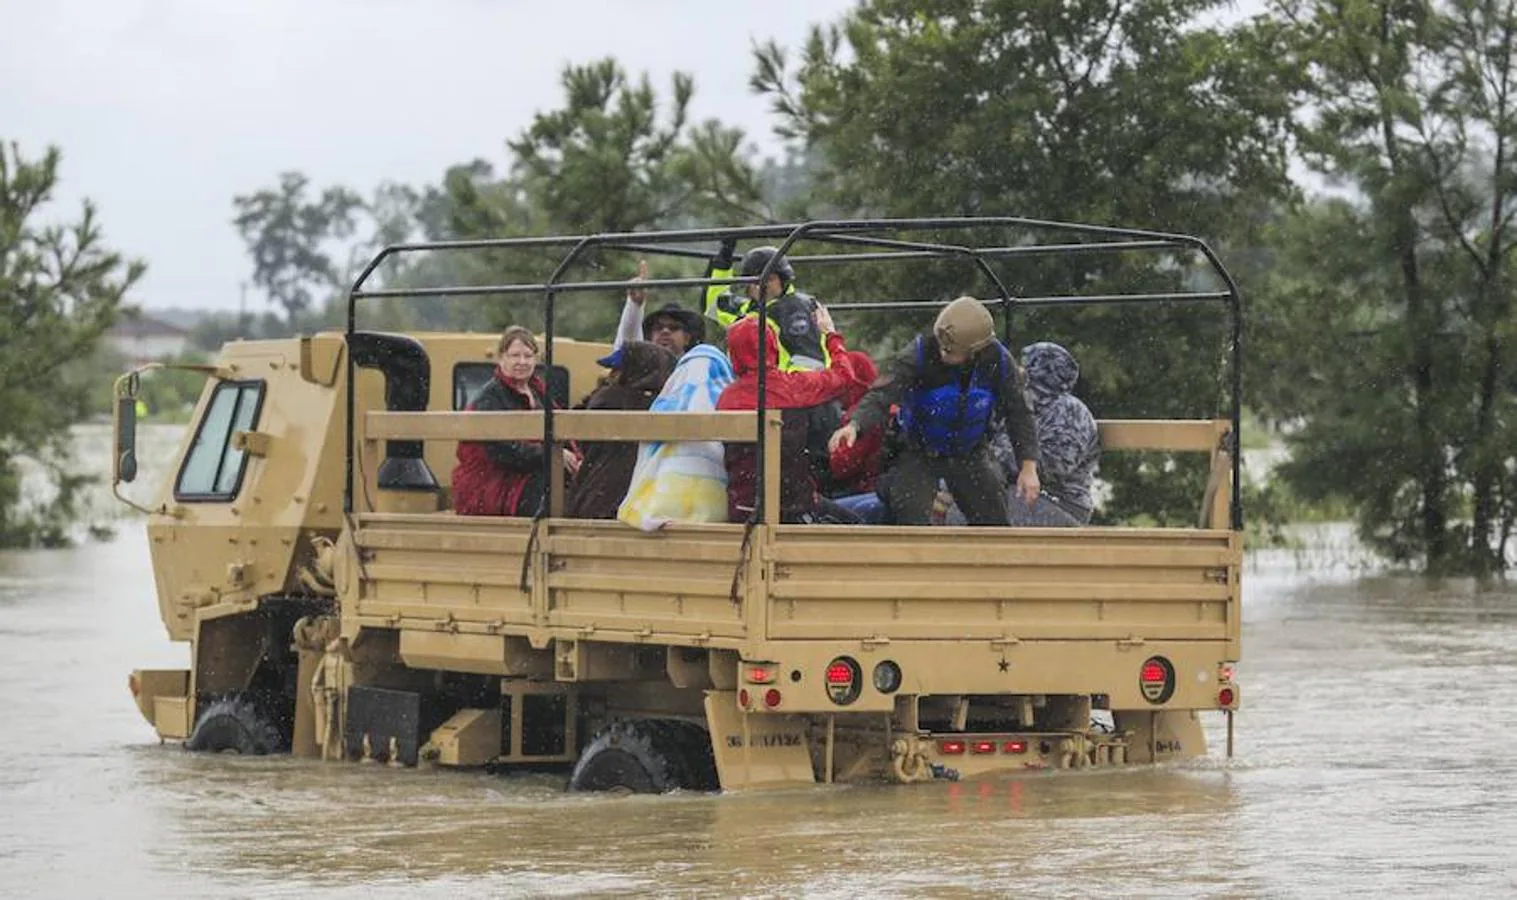 Camiones de la Guardia Nacional de Texas llevan a personas afectadas por las inundaciones y vehículos sumergidos después del huracán Harvey en Houston, Texas, Estados Unidos, 29 de agost. 